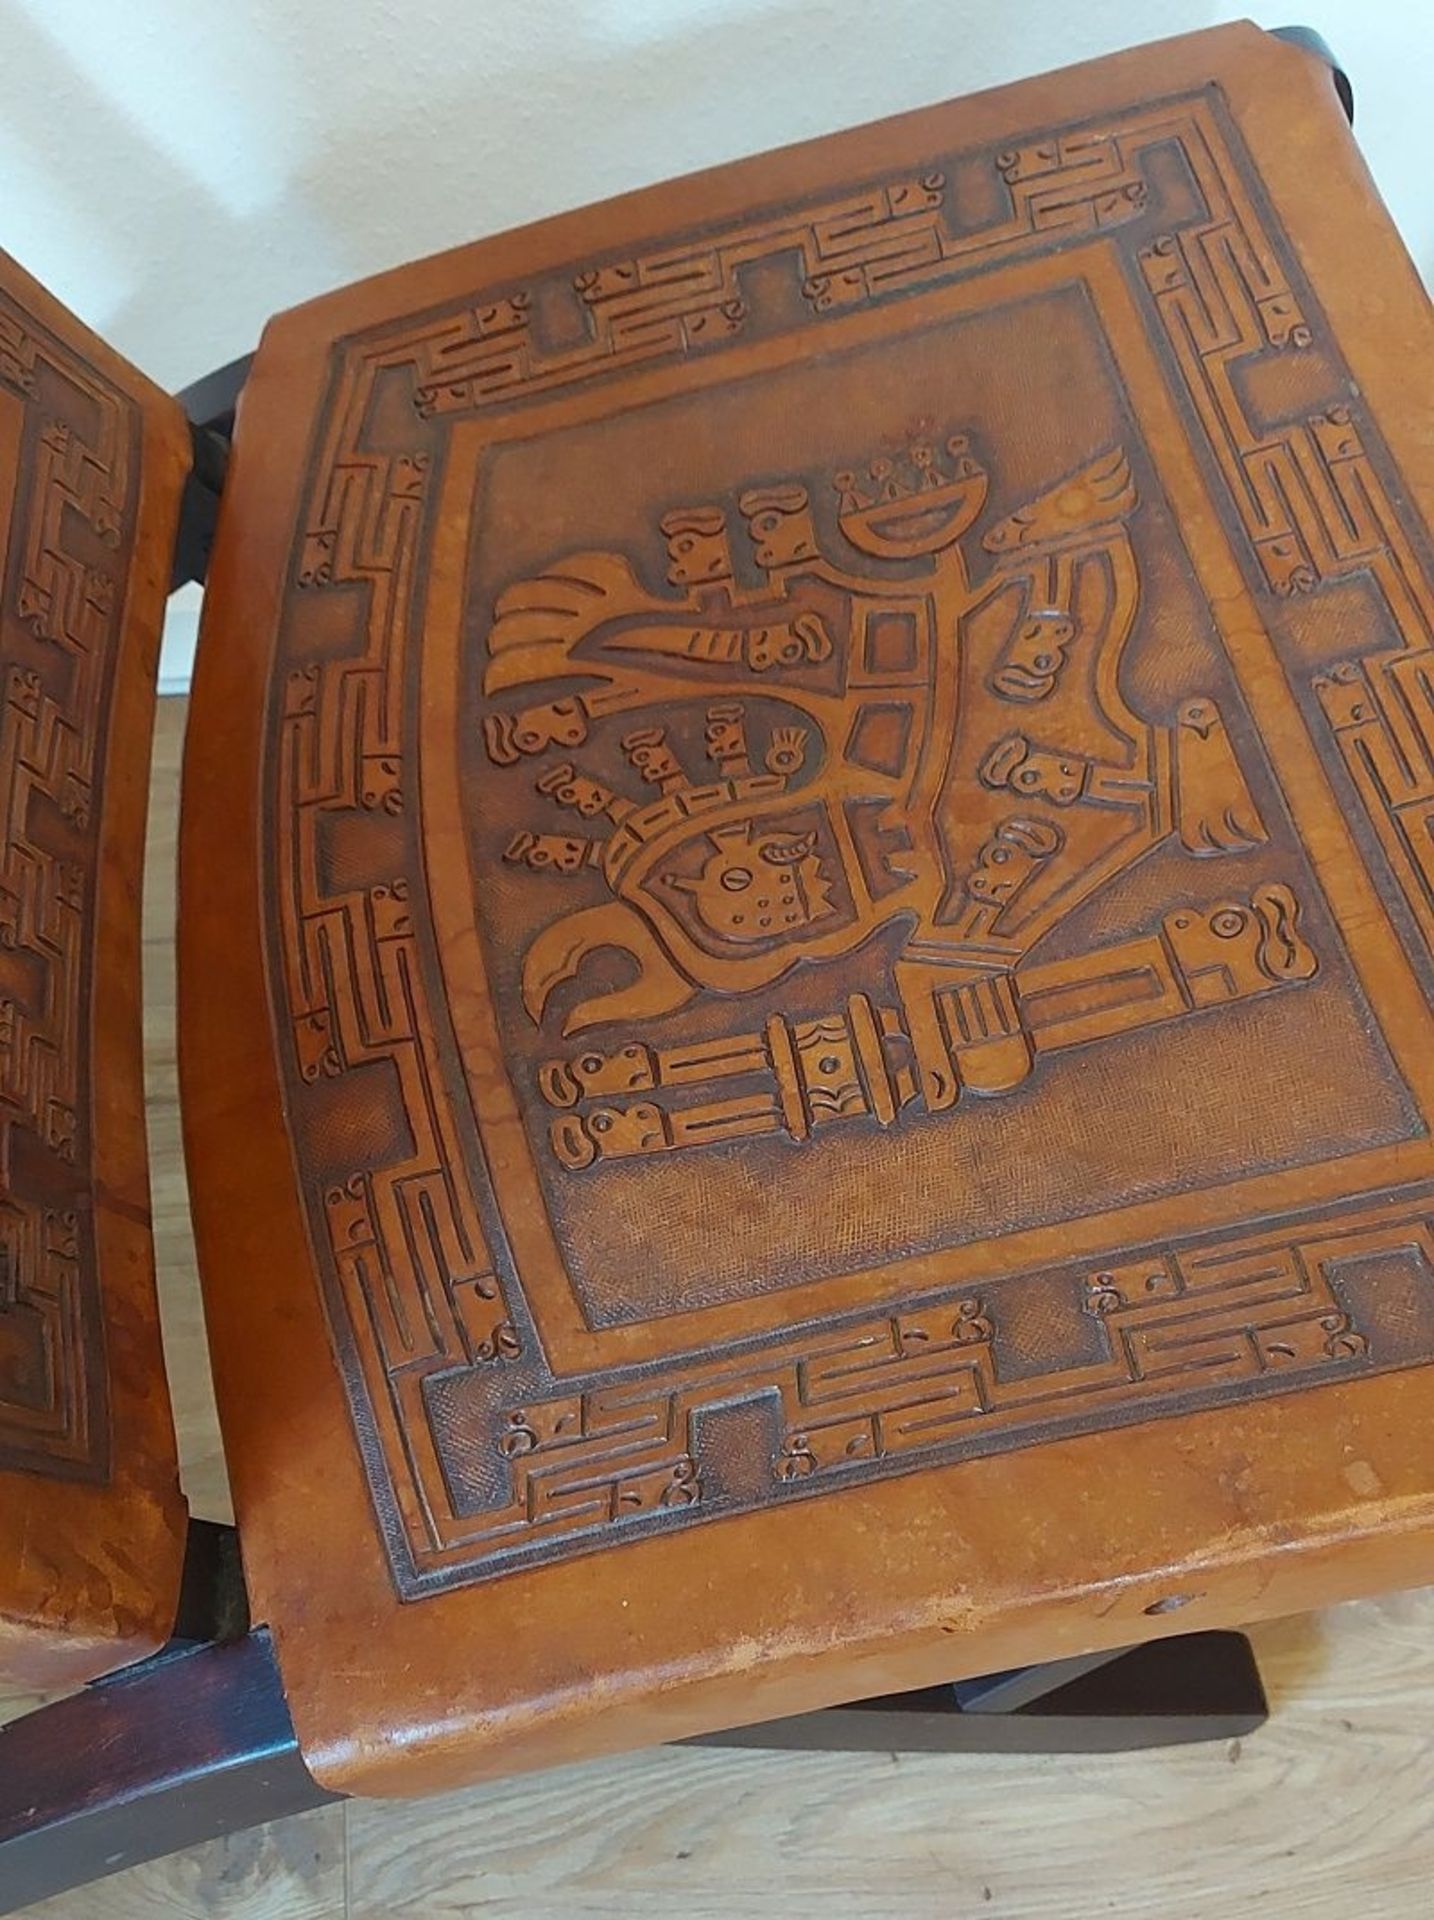 Außergewöhnlicher Büffelleder Lederstuhl PERU Inka Design Kolonialstil - Bild 6 aus 6